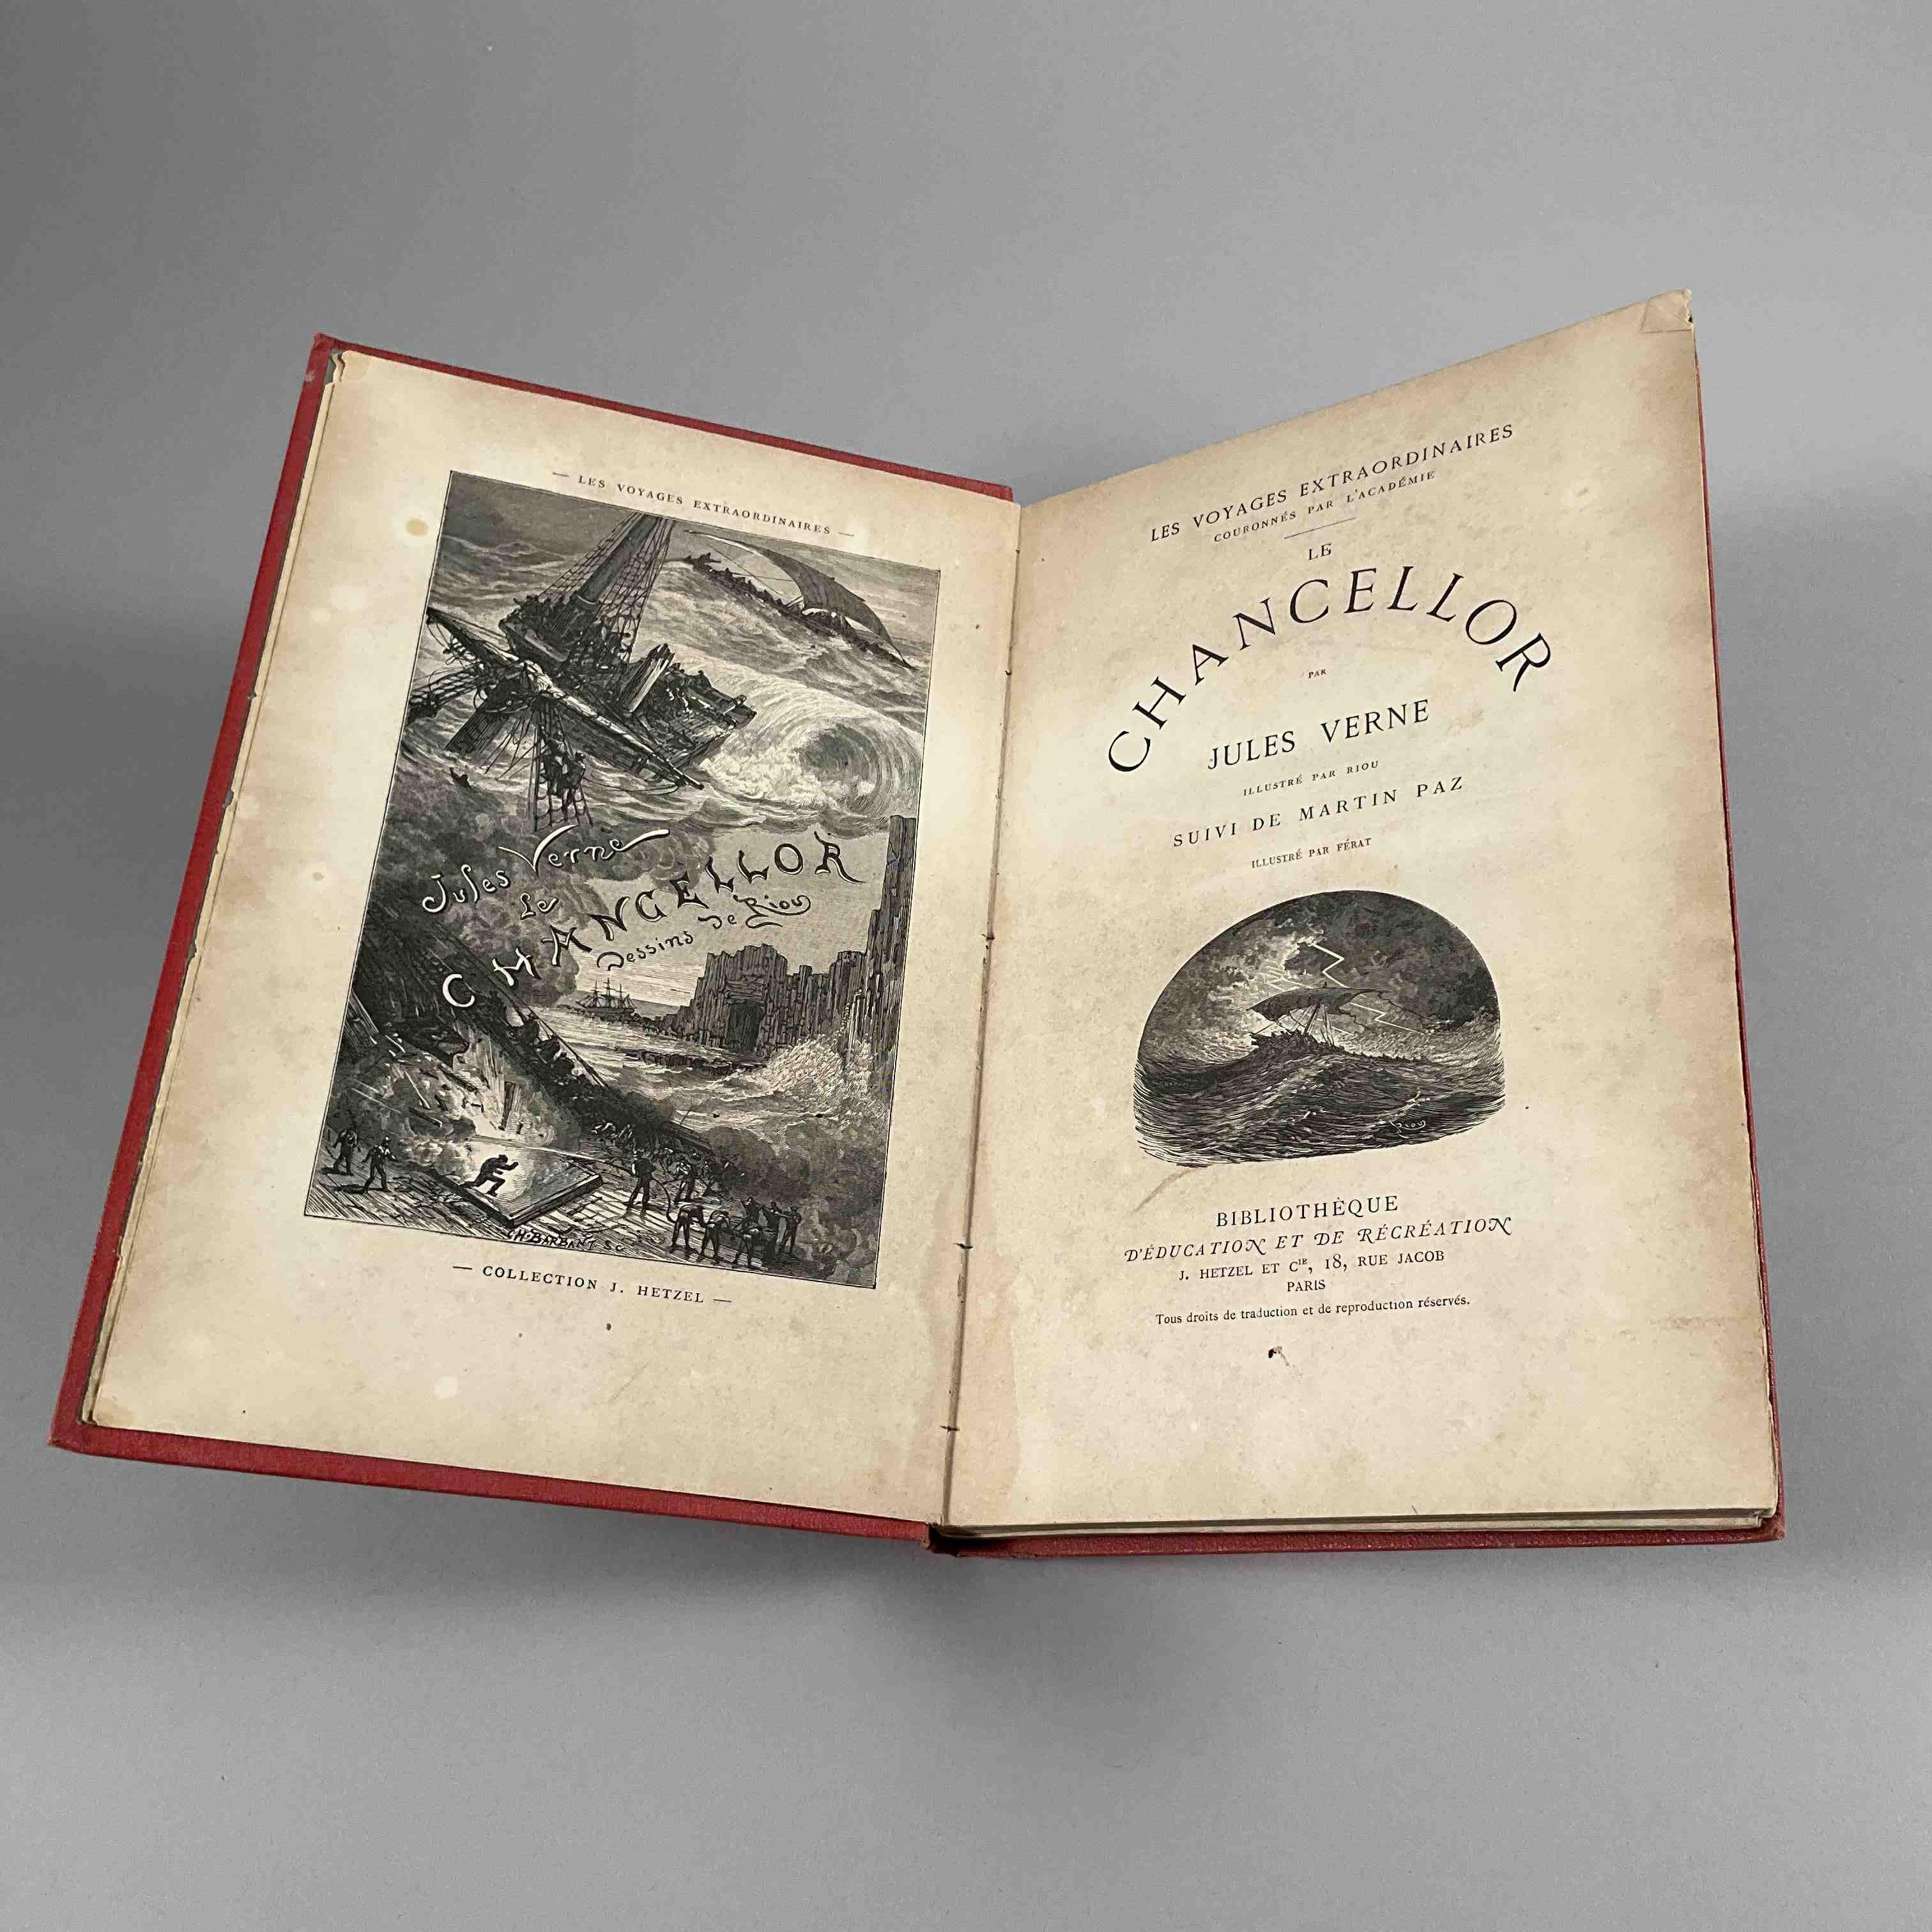 Jules Verne, Le Chancellor.
Bibliothèque d éducation et de récréation Hetzel,...